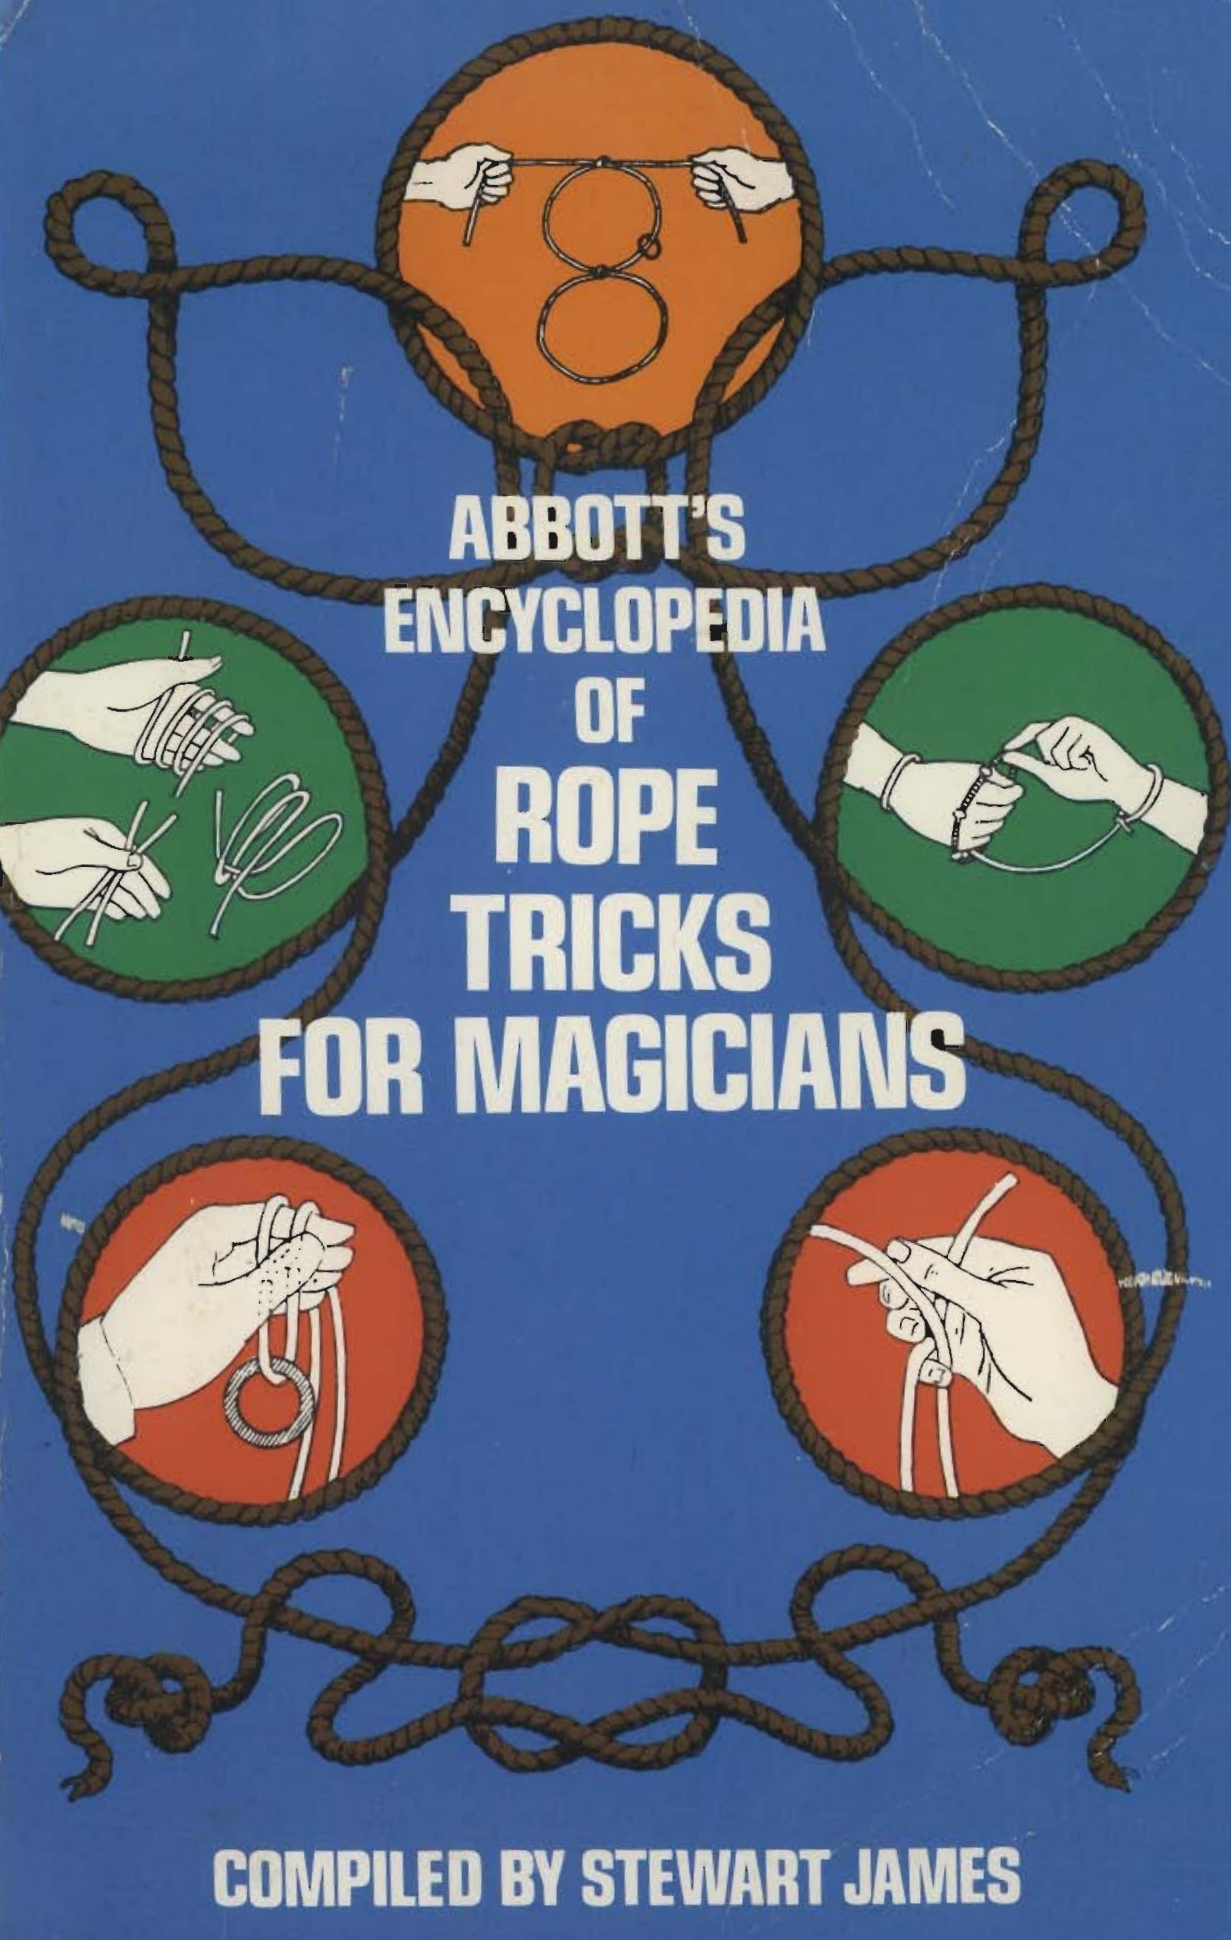 Stewart James - Encyclopedia of Rope Tricks